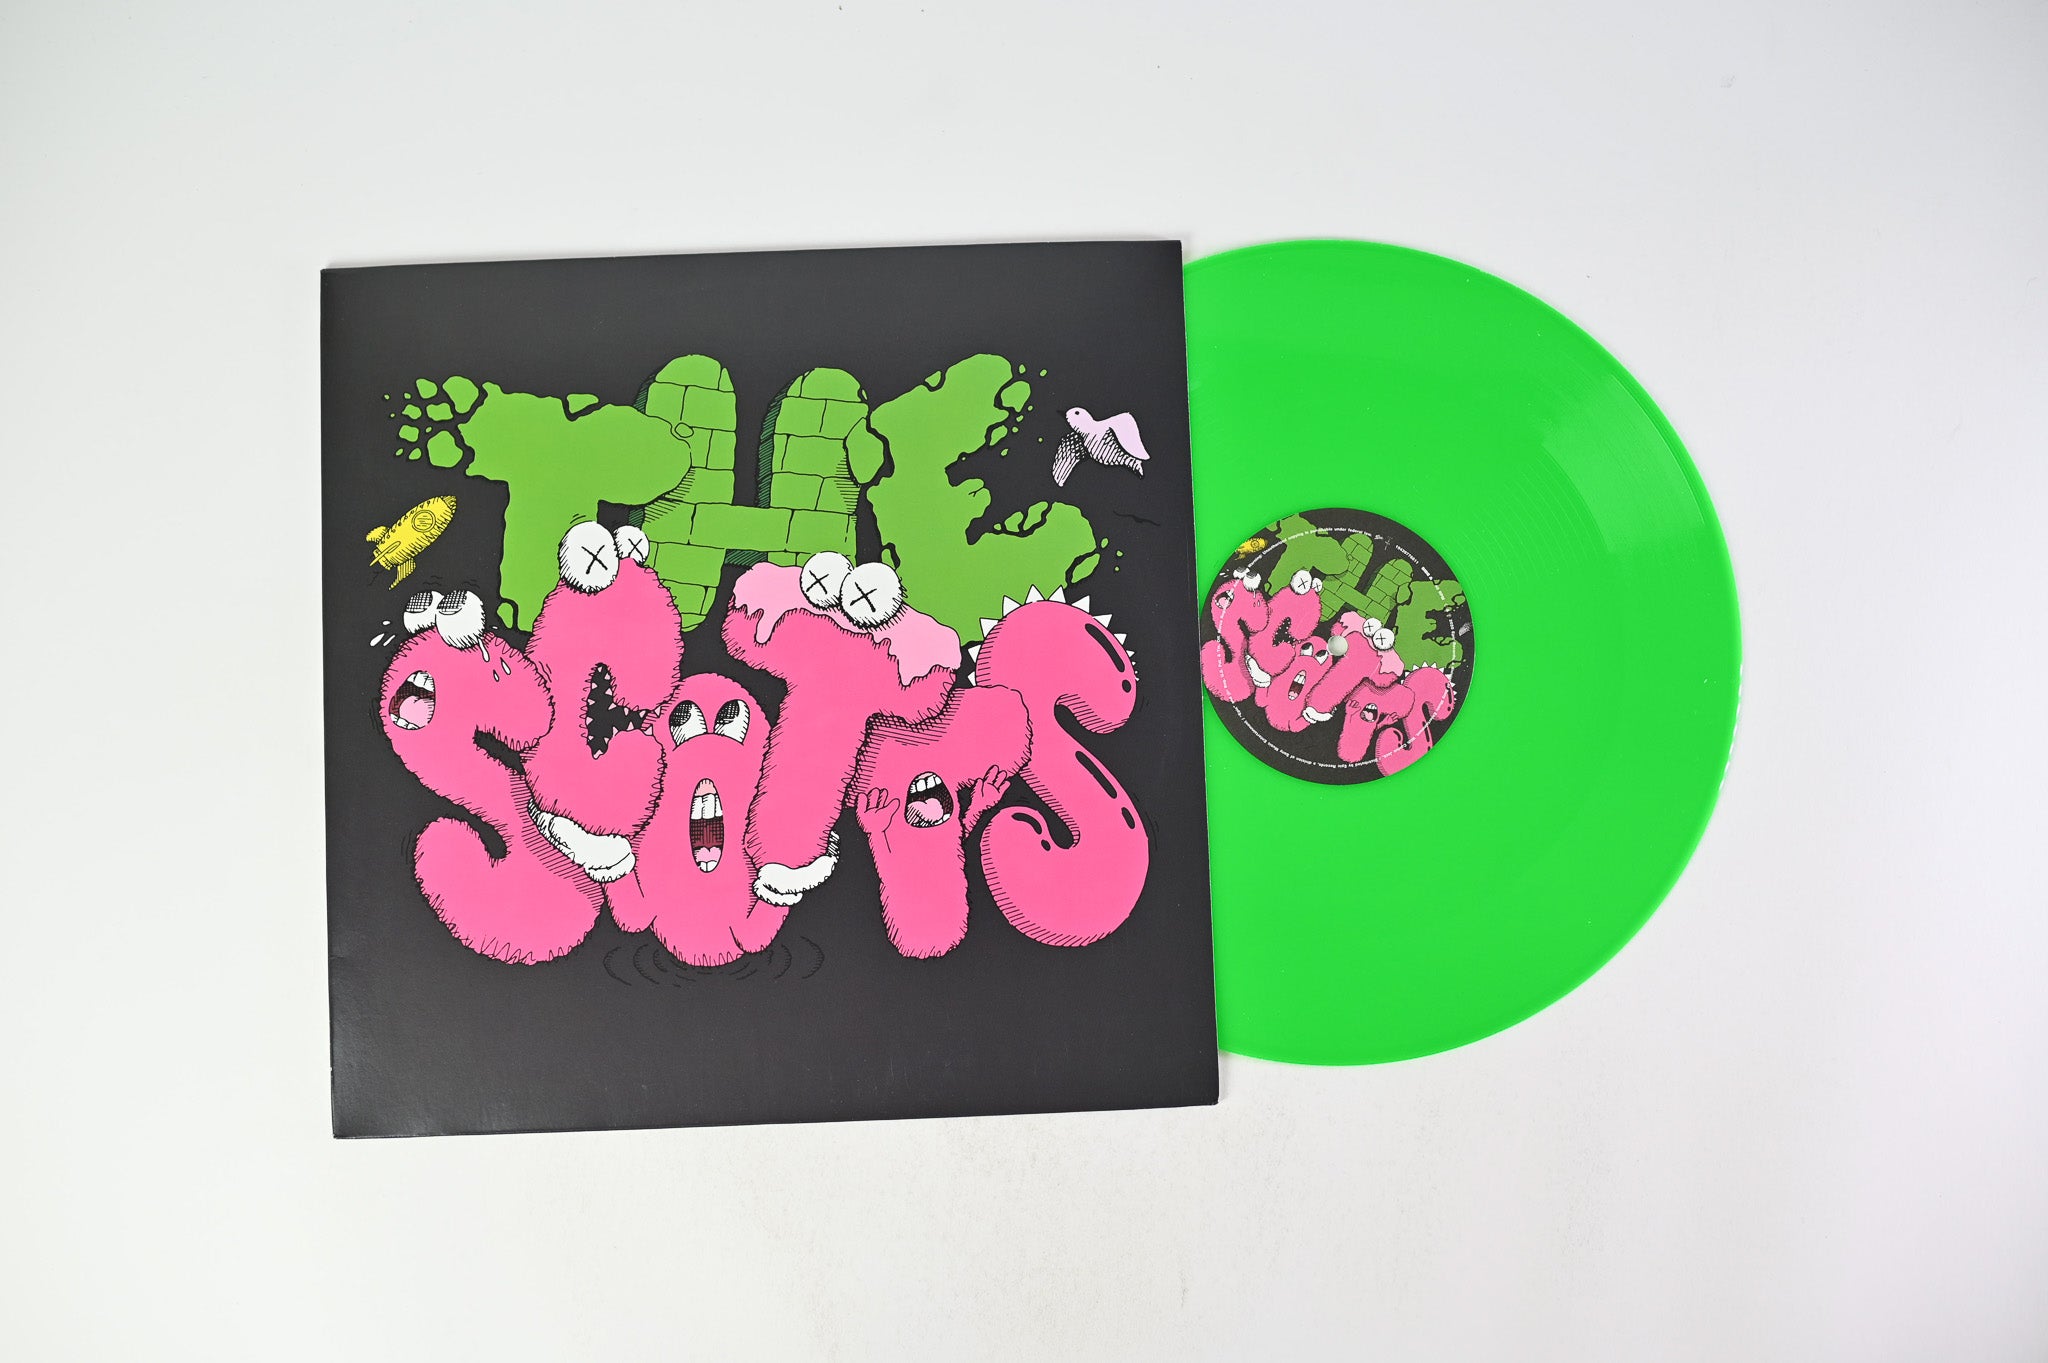 THE SCOTTS - The Scotts on Cactus Jack Ltd 45 RPM 12" Single Green